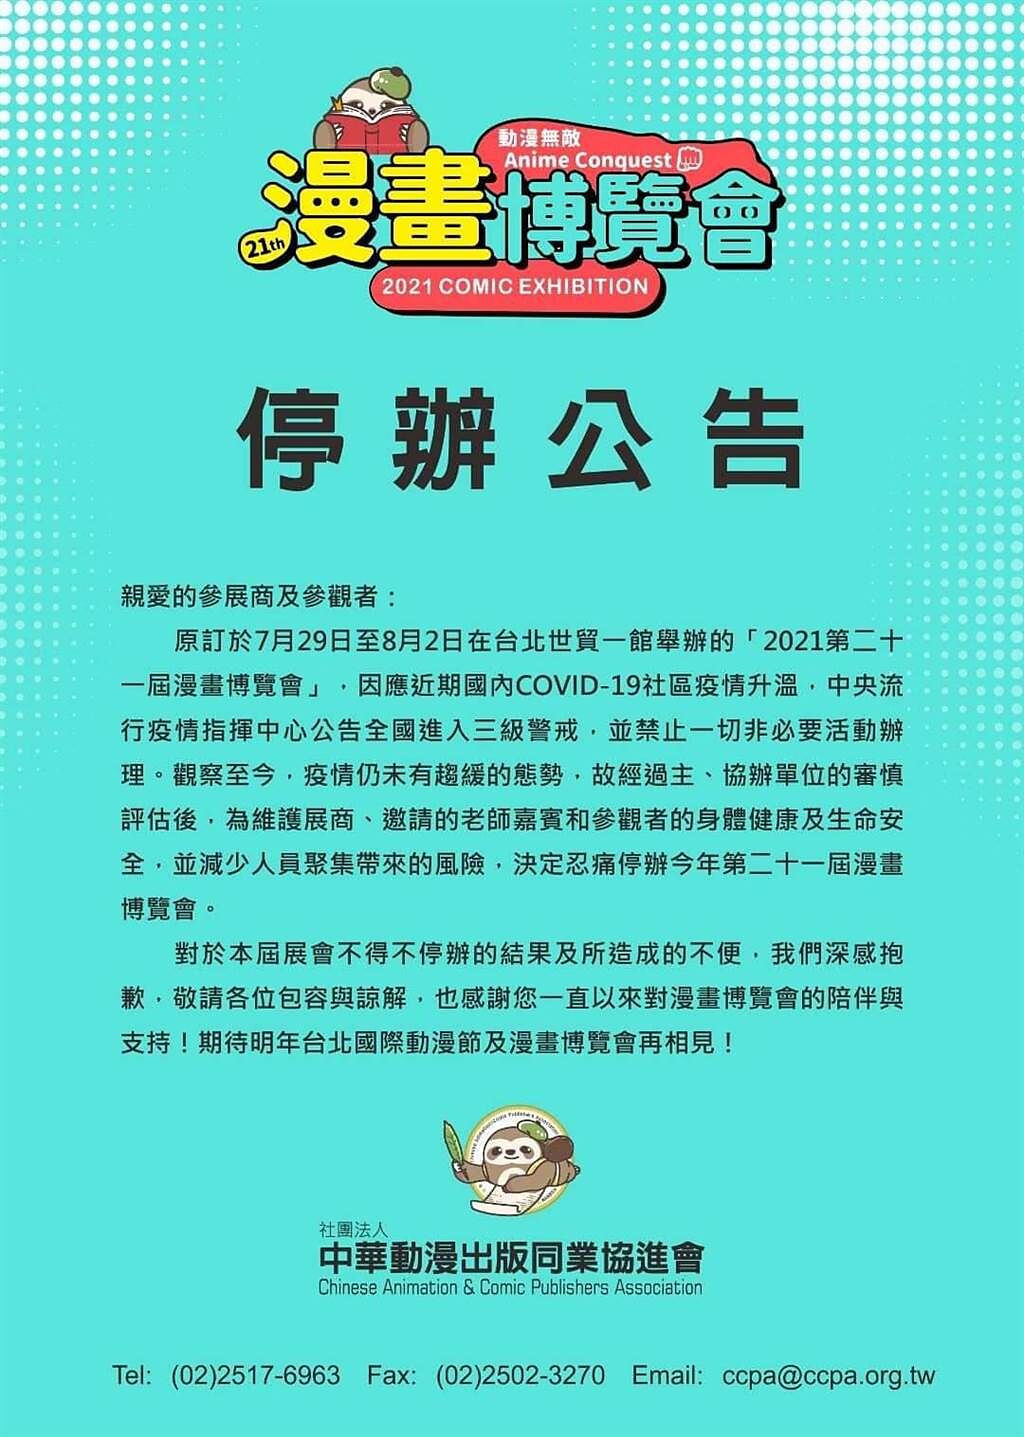 原訂於7月29日至8月2日在台北世貿一館舉辦的「2021第二十一屆漫畫博覽會」因疫情停辦。（摘自臉書）